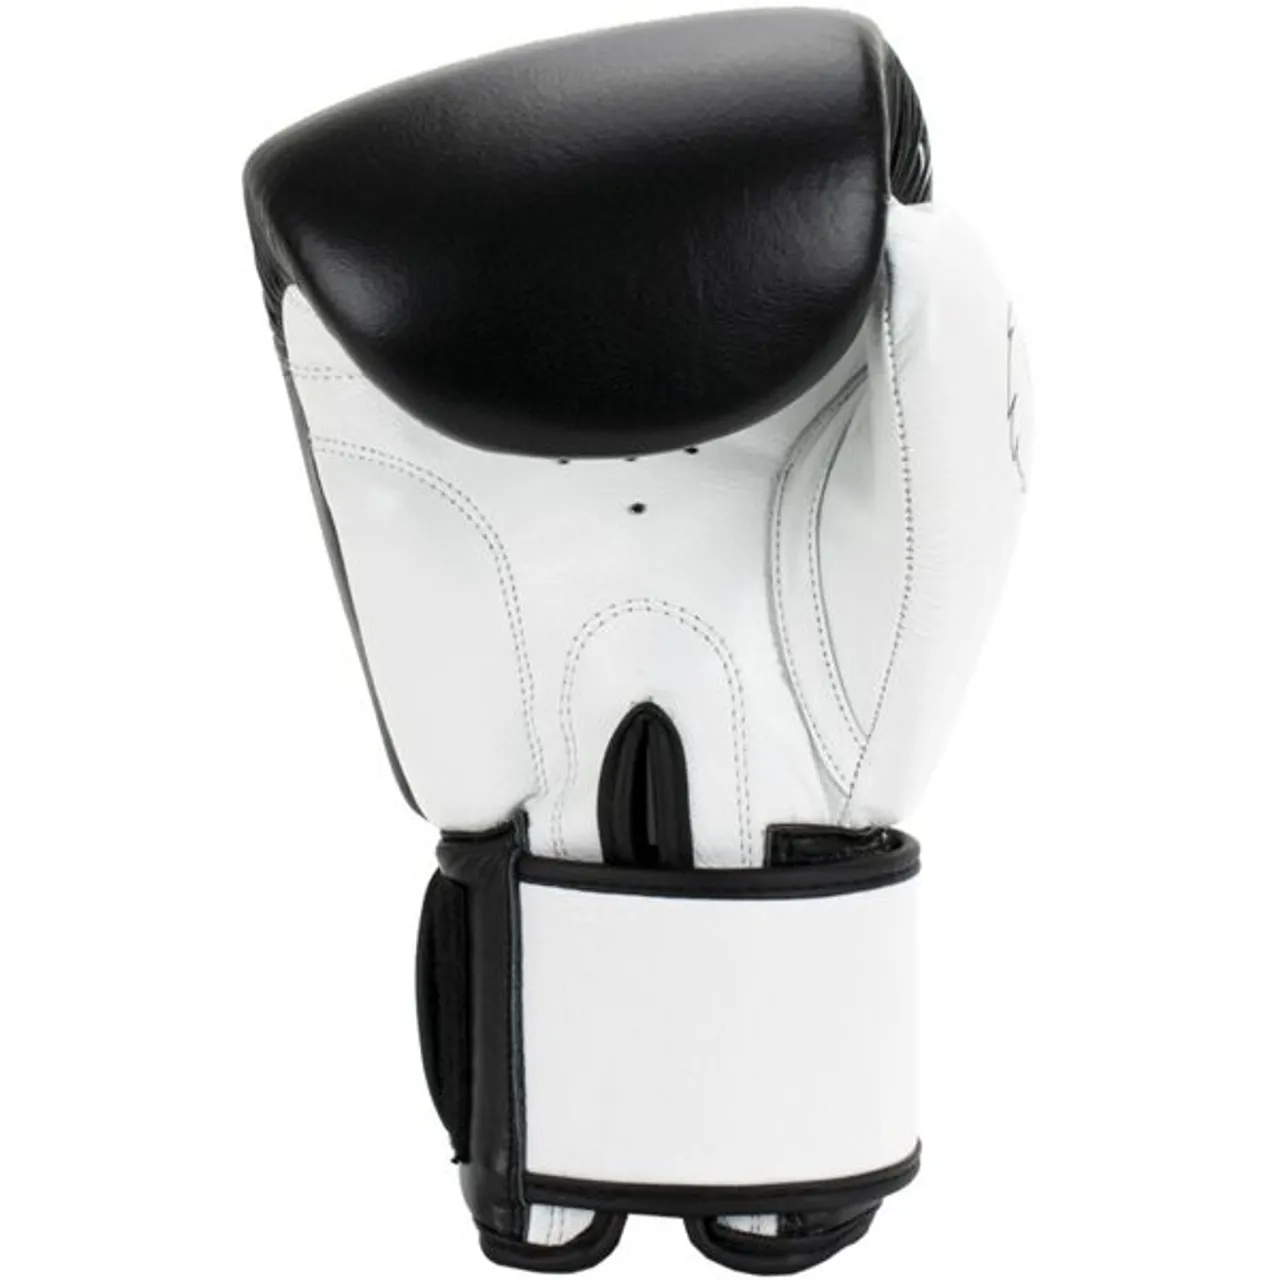 Sandsackhandschuhe SUPER PRO "Undisputed" Boxhandschuhe Gr. S, schwarz (schwarz, weiß) Boxhandschuhe